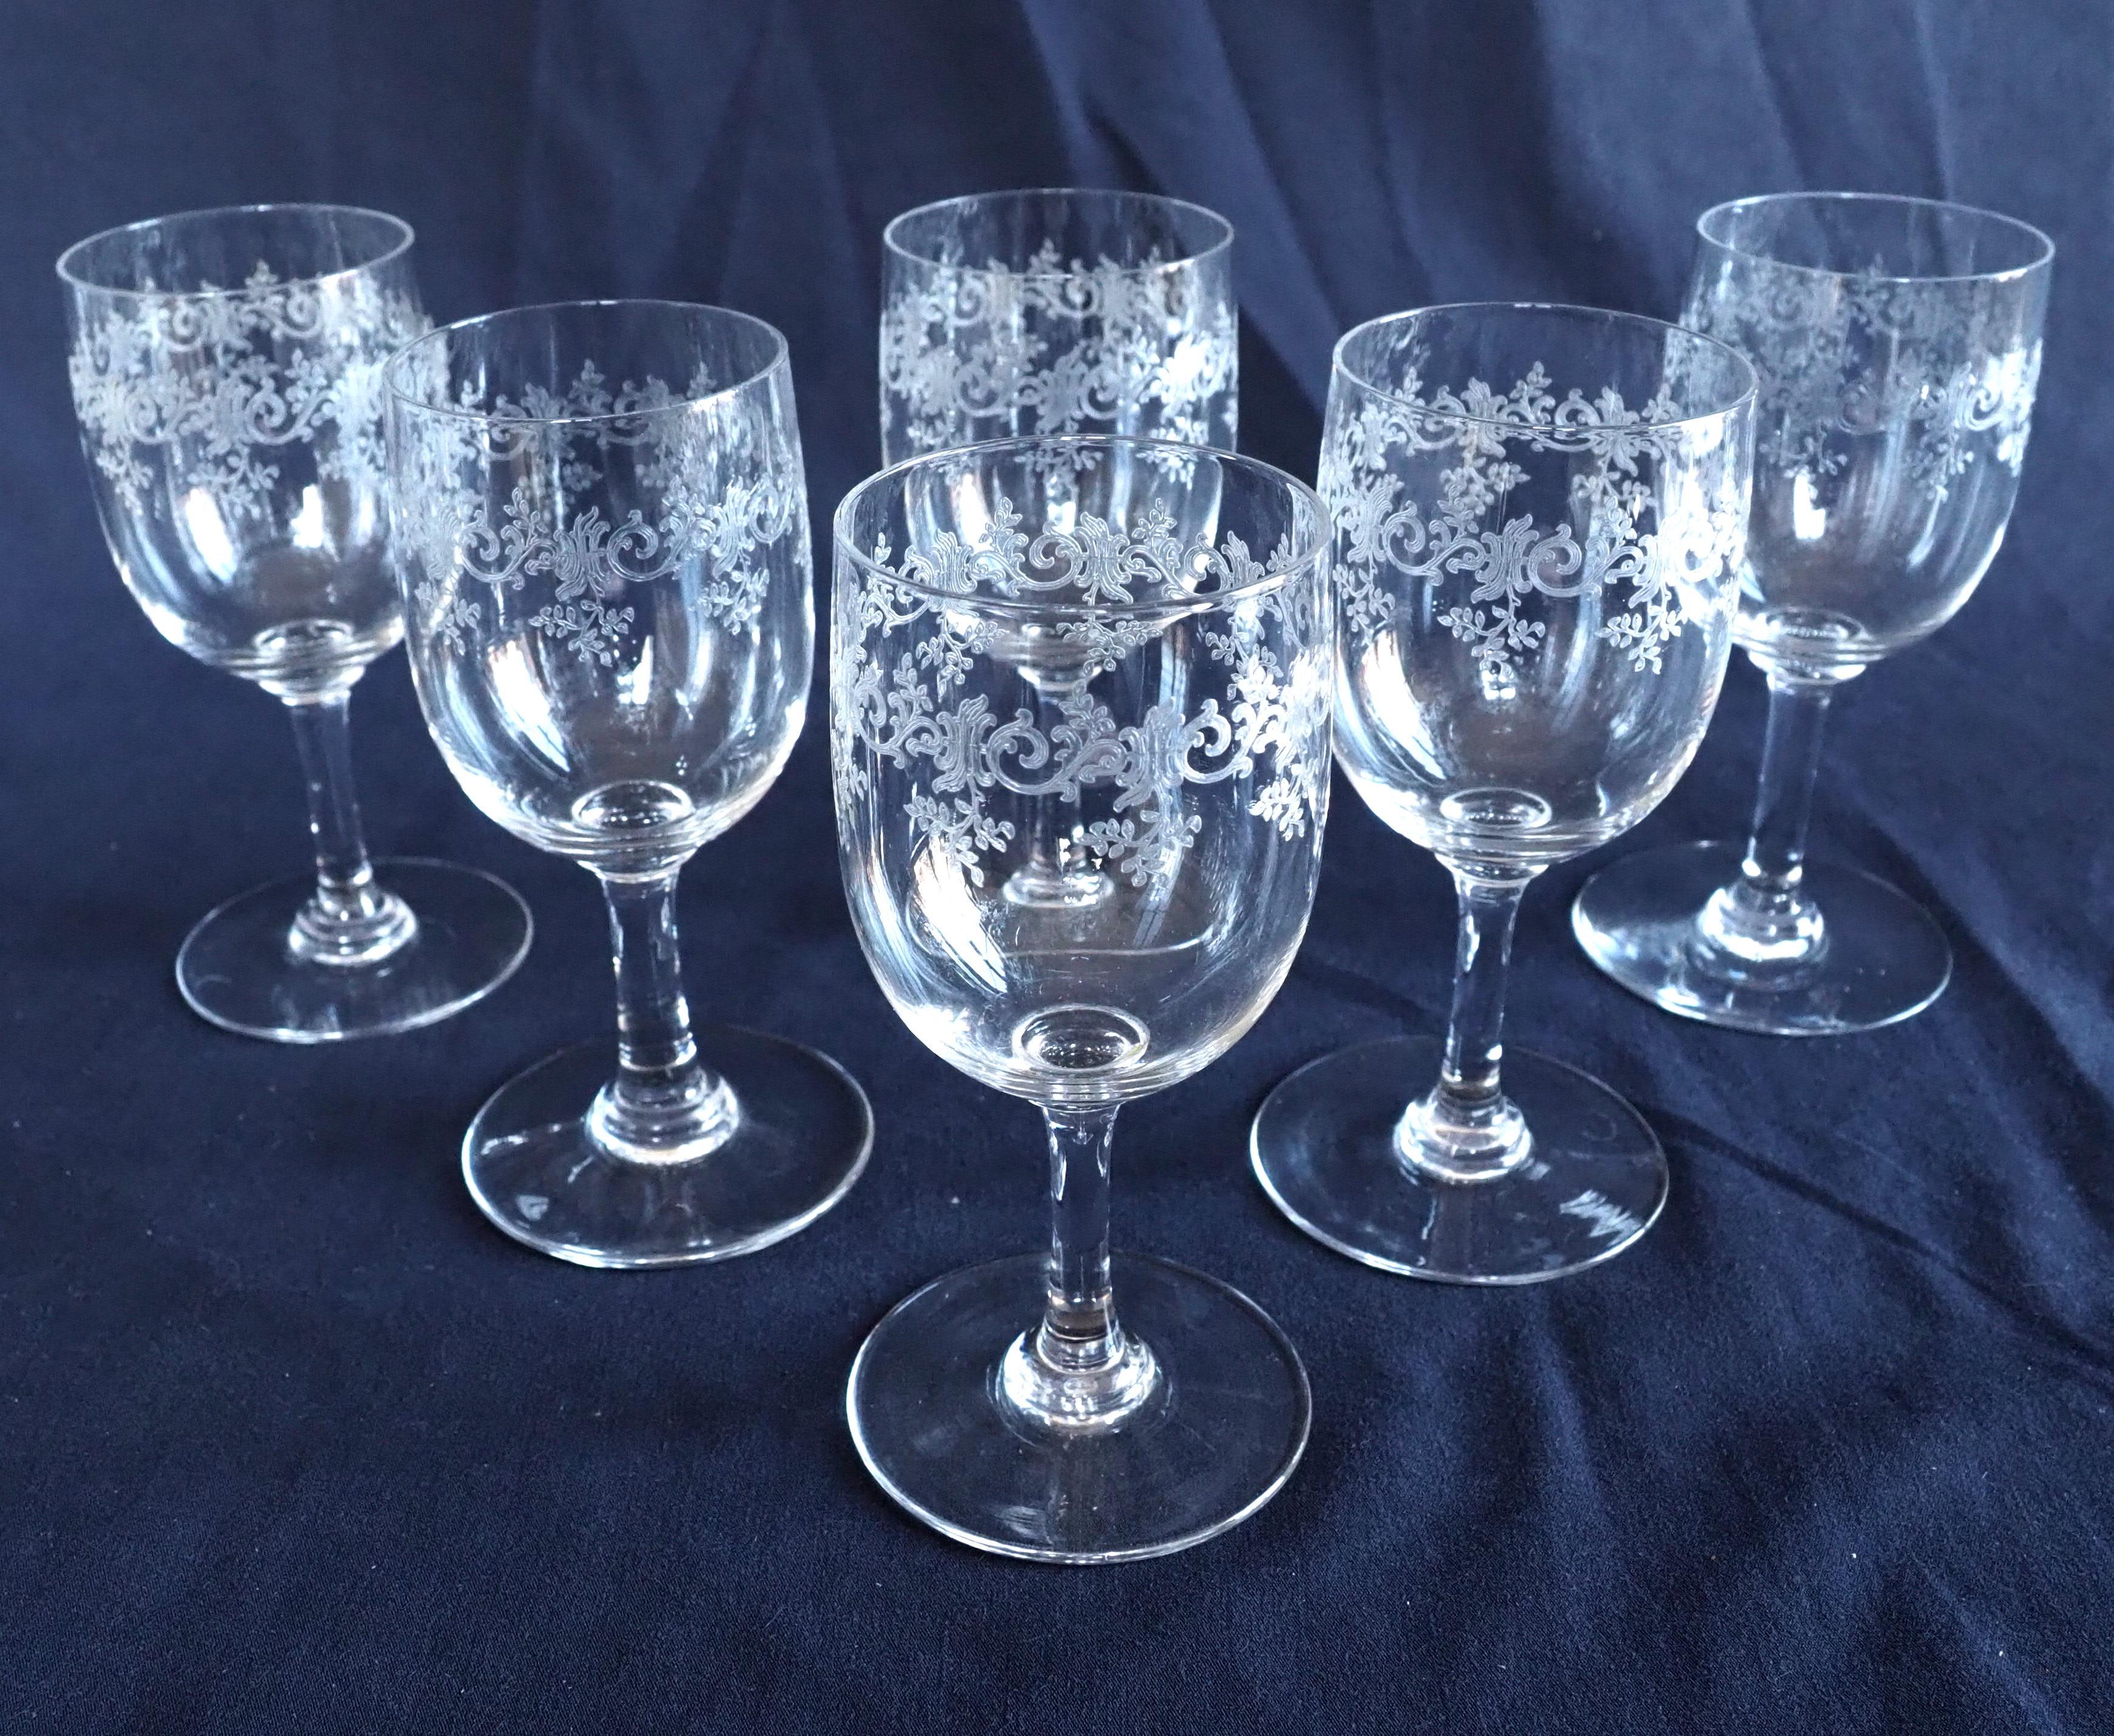 Satz von 4 Baccarat Kristallgläsern, sogenanntes Sevigne Modell, bestehend aus :
- 1 Wasserglas - amerikanisches Format (16,9 cm hoch) (seltenes Format)
- 1 Rotweinglas (cm hoch)
- 1 Weißweinglas (cm hoch)
- 1 Hafenglas (cm hoch).
Sevigne ist ein